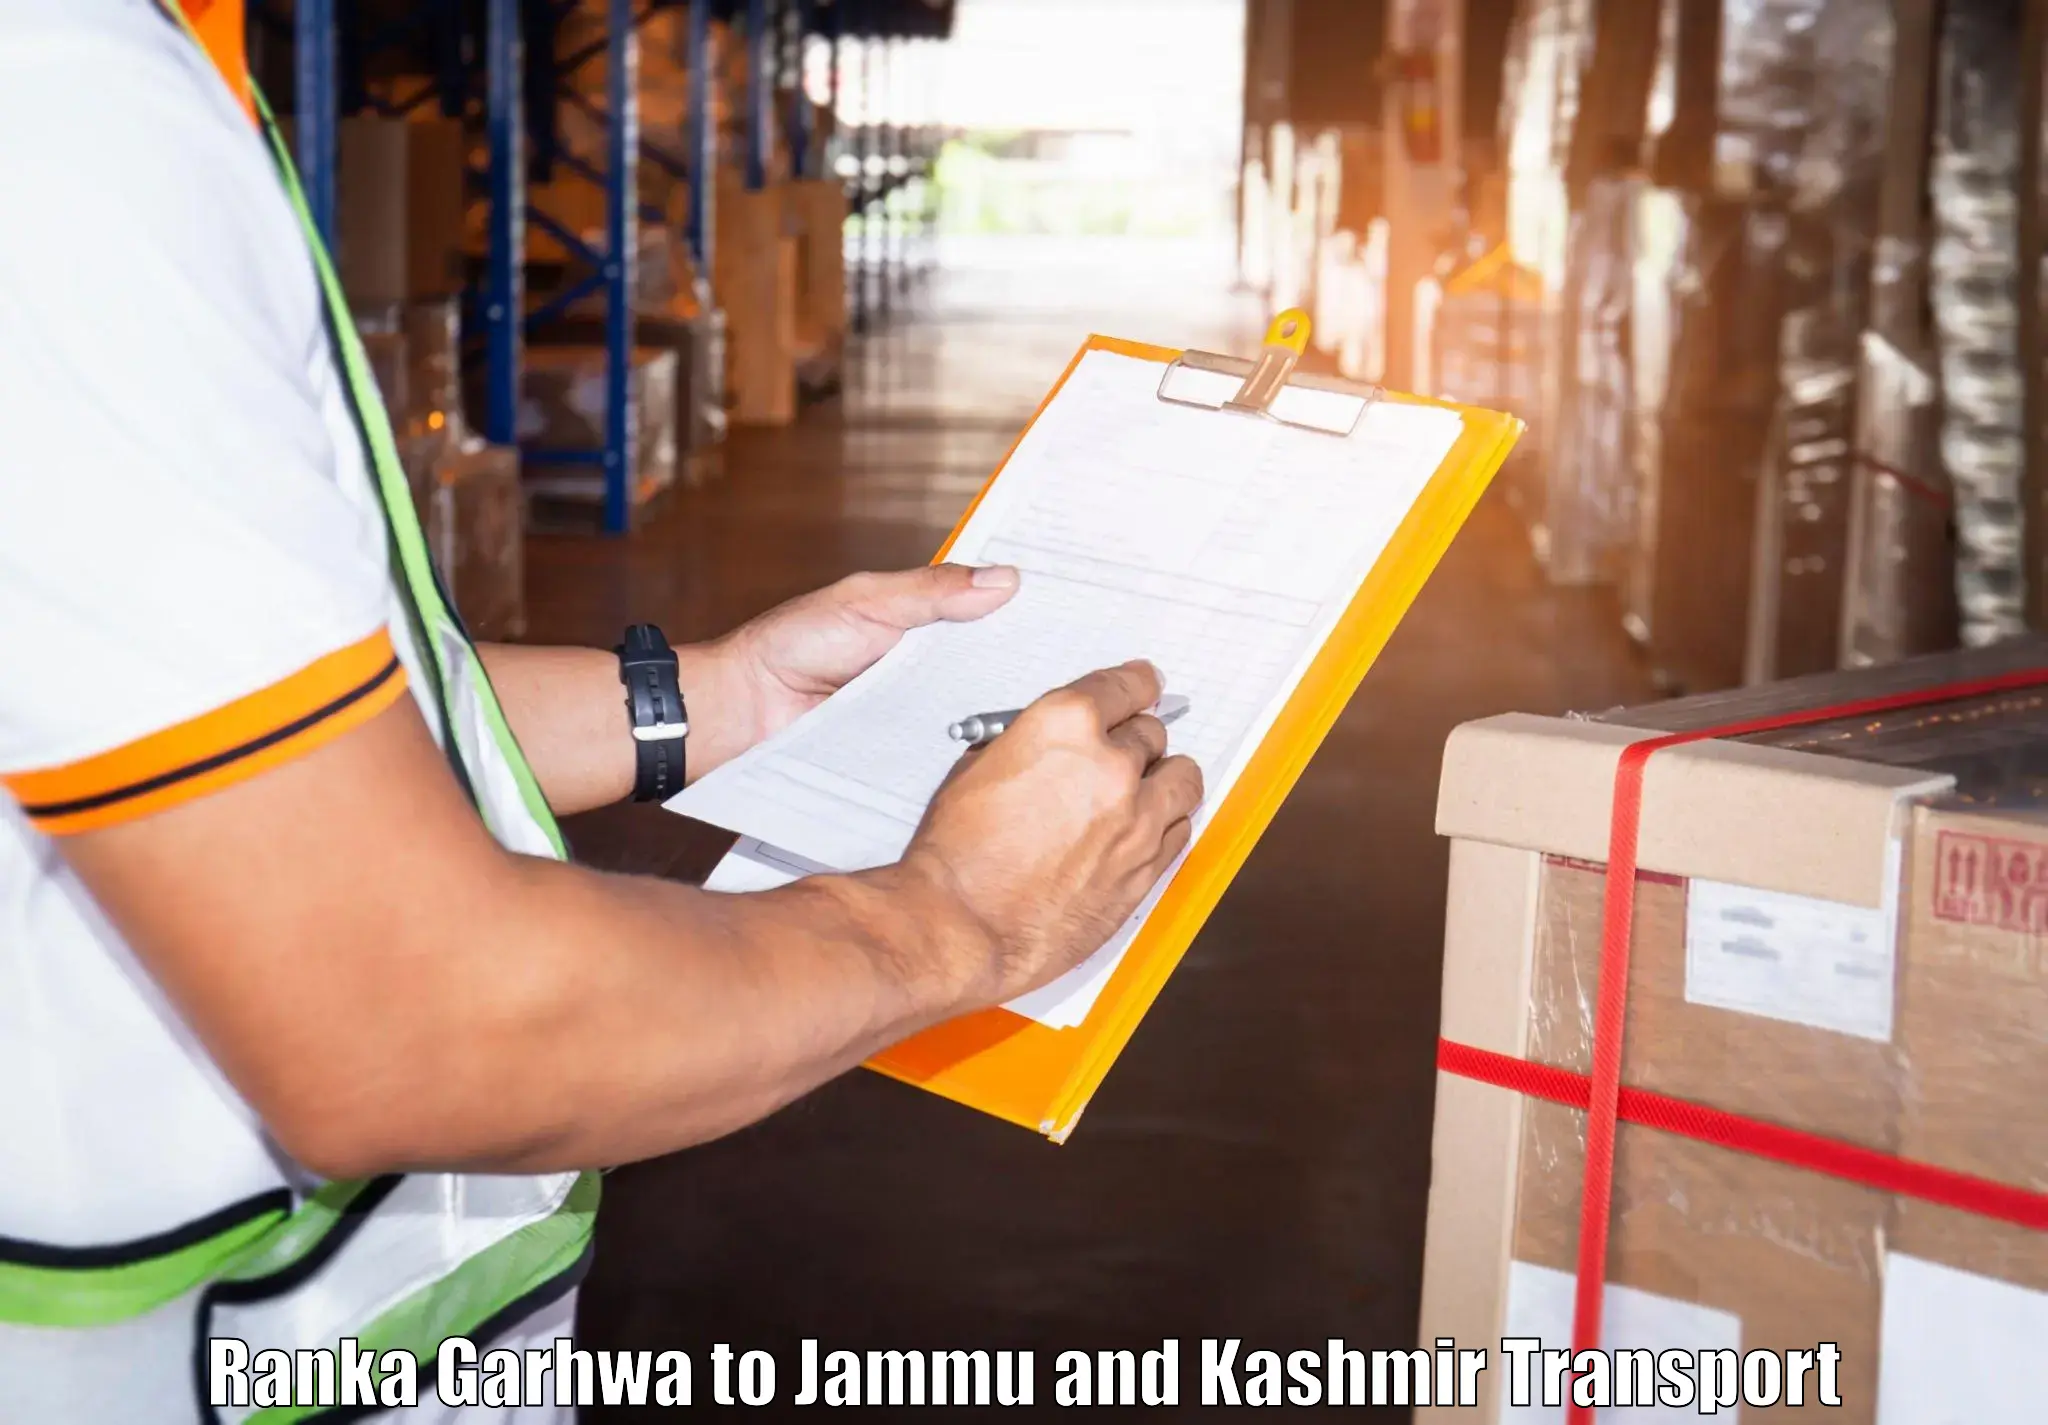 Delivery service Ranka Garhwa to IIT Jammu